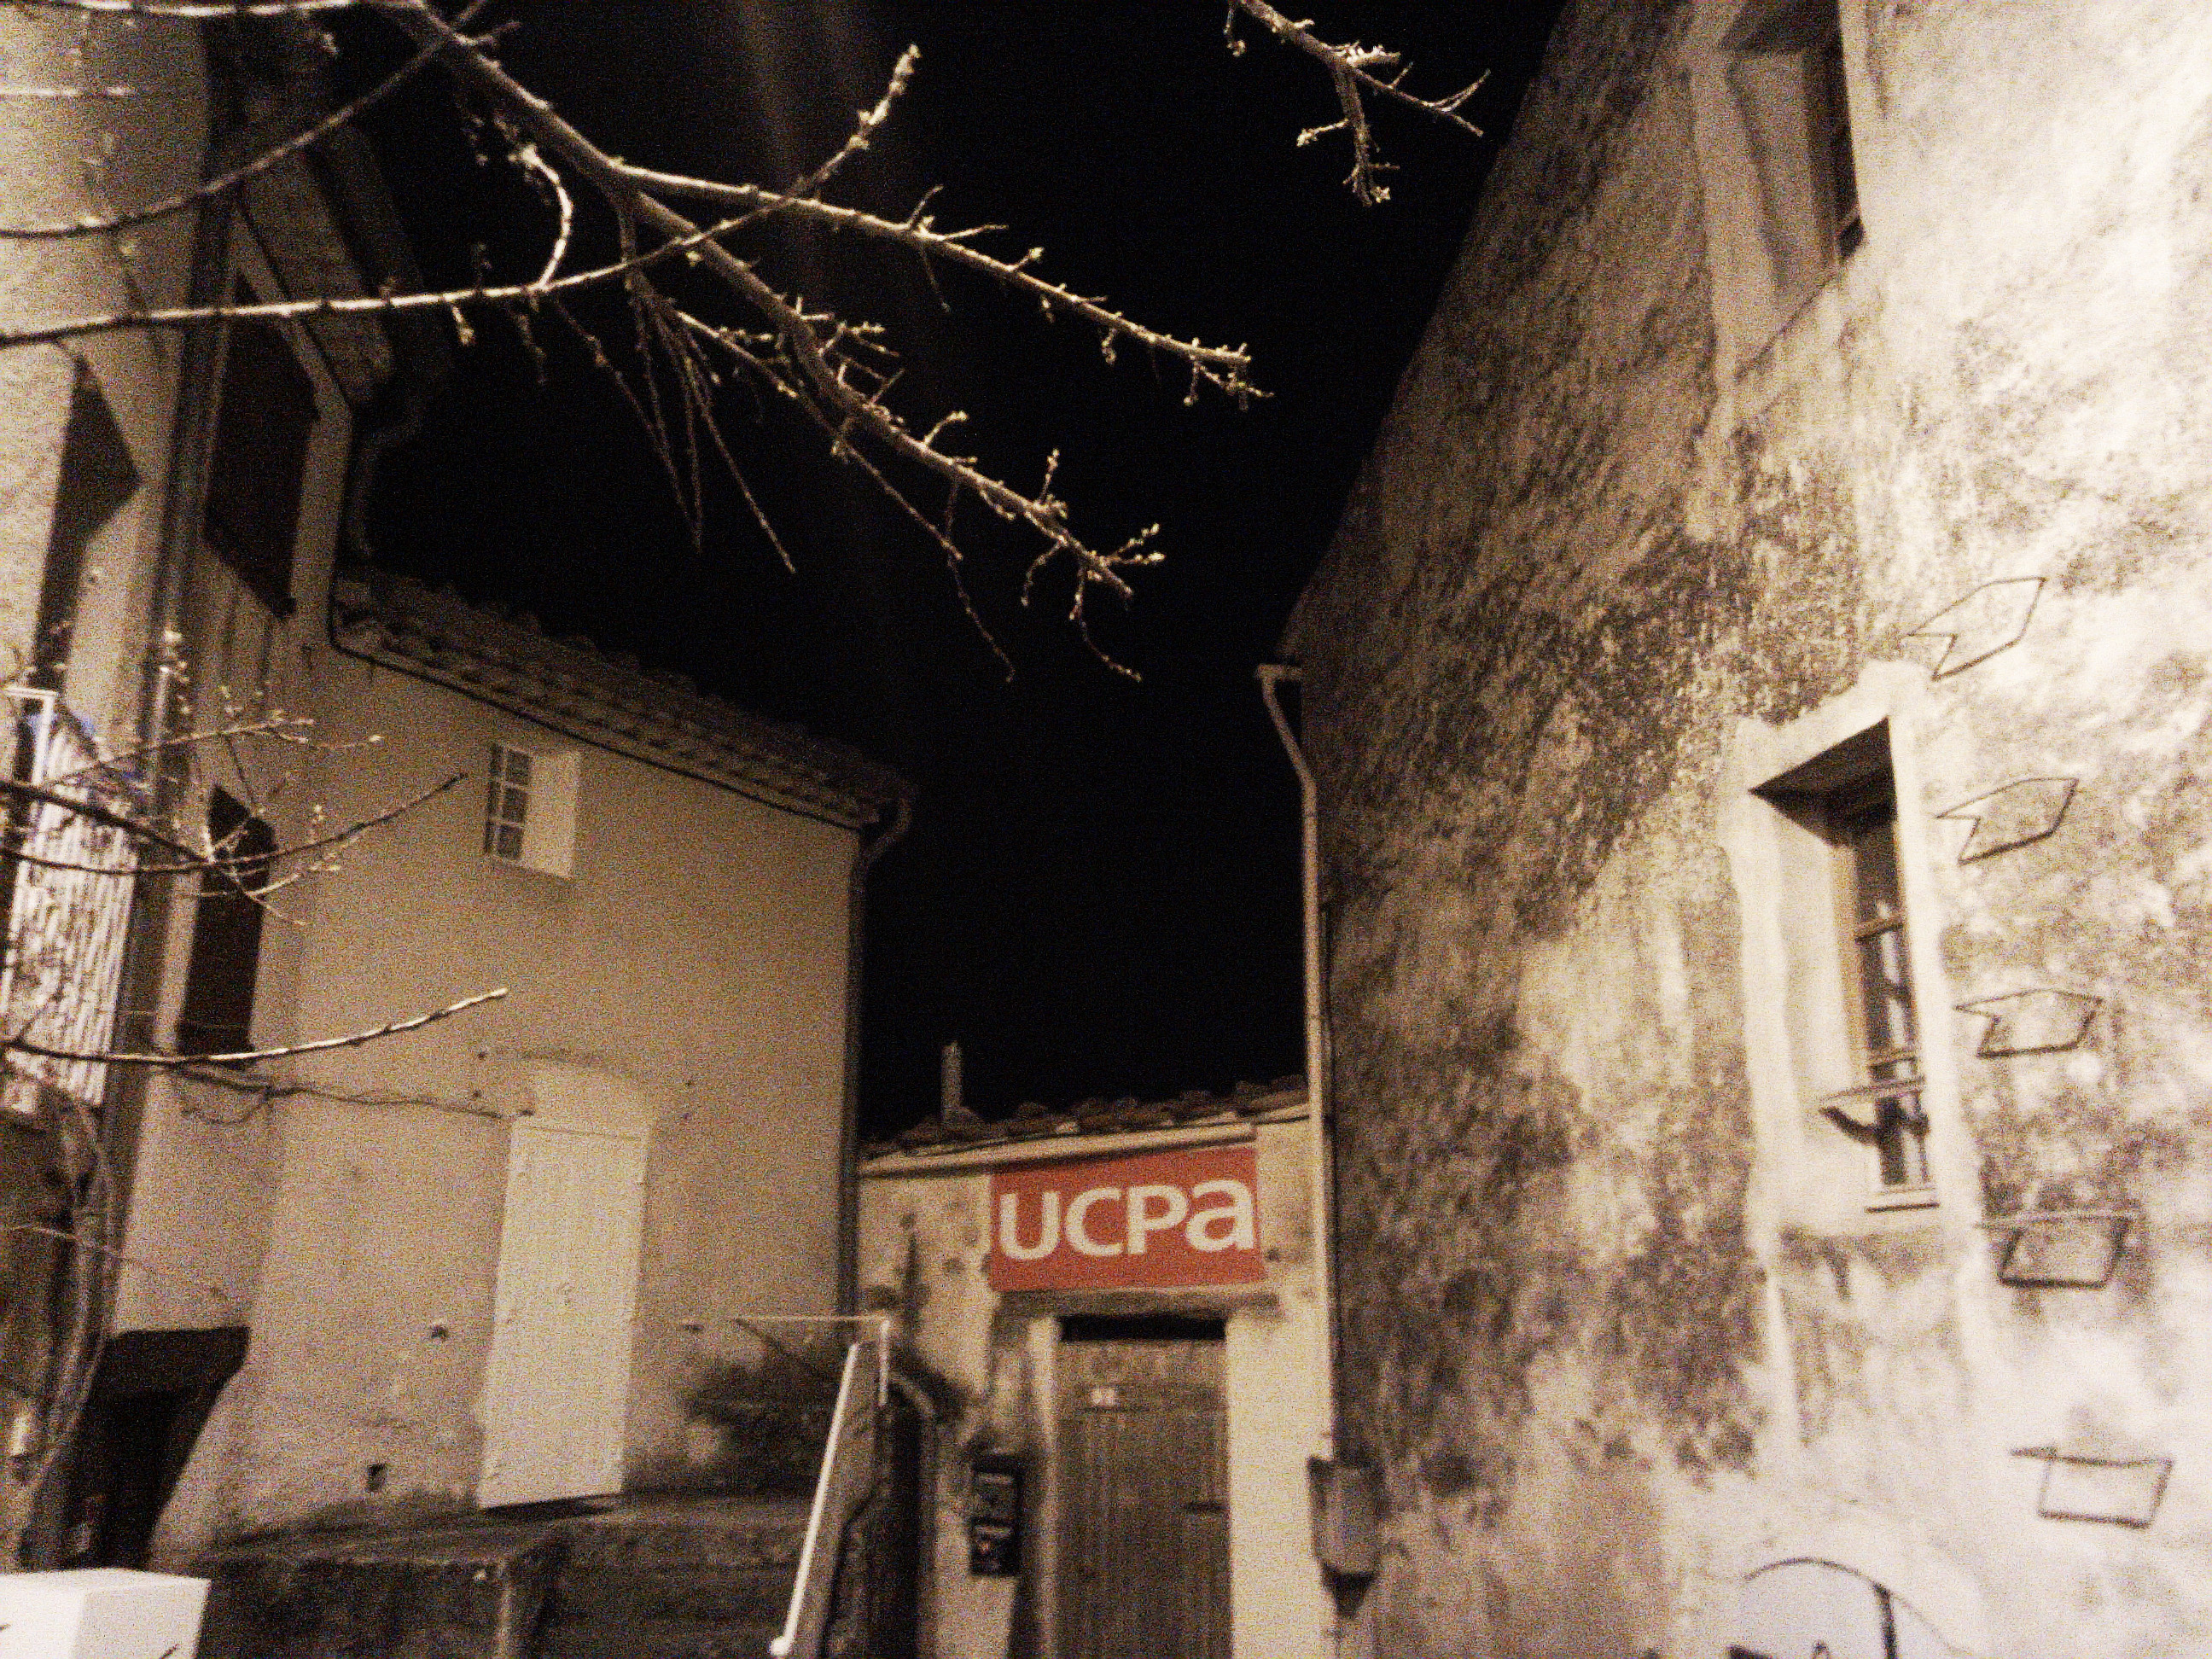 Centre UCPA Le Verdon de nuit, La Palud-sur-Verdon, France [Centre UCPA Le Verdon by night, La Palud-sur-Verdon, France]